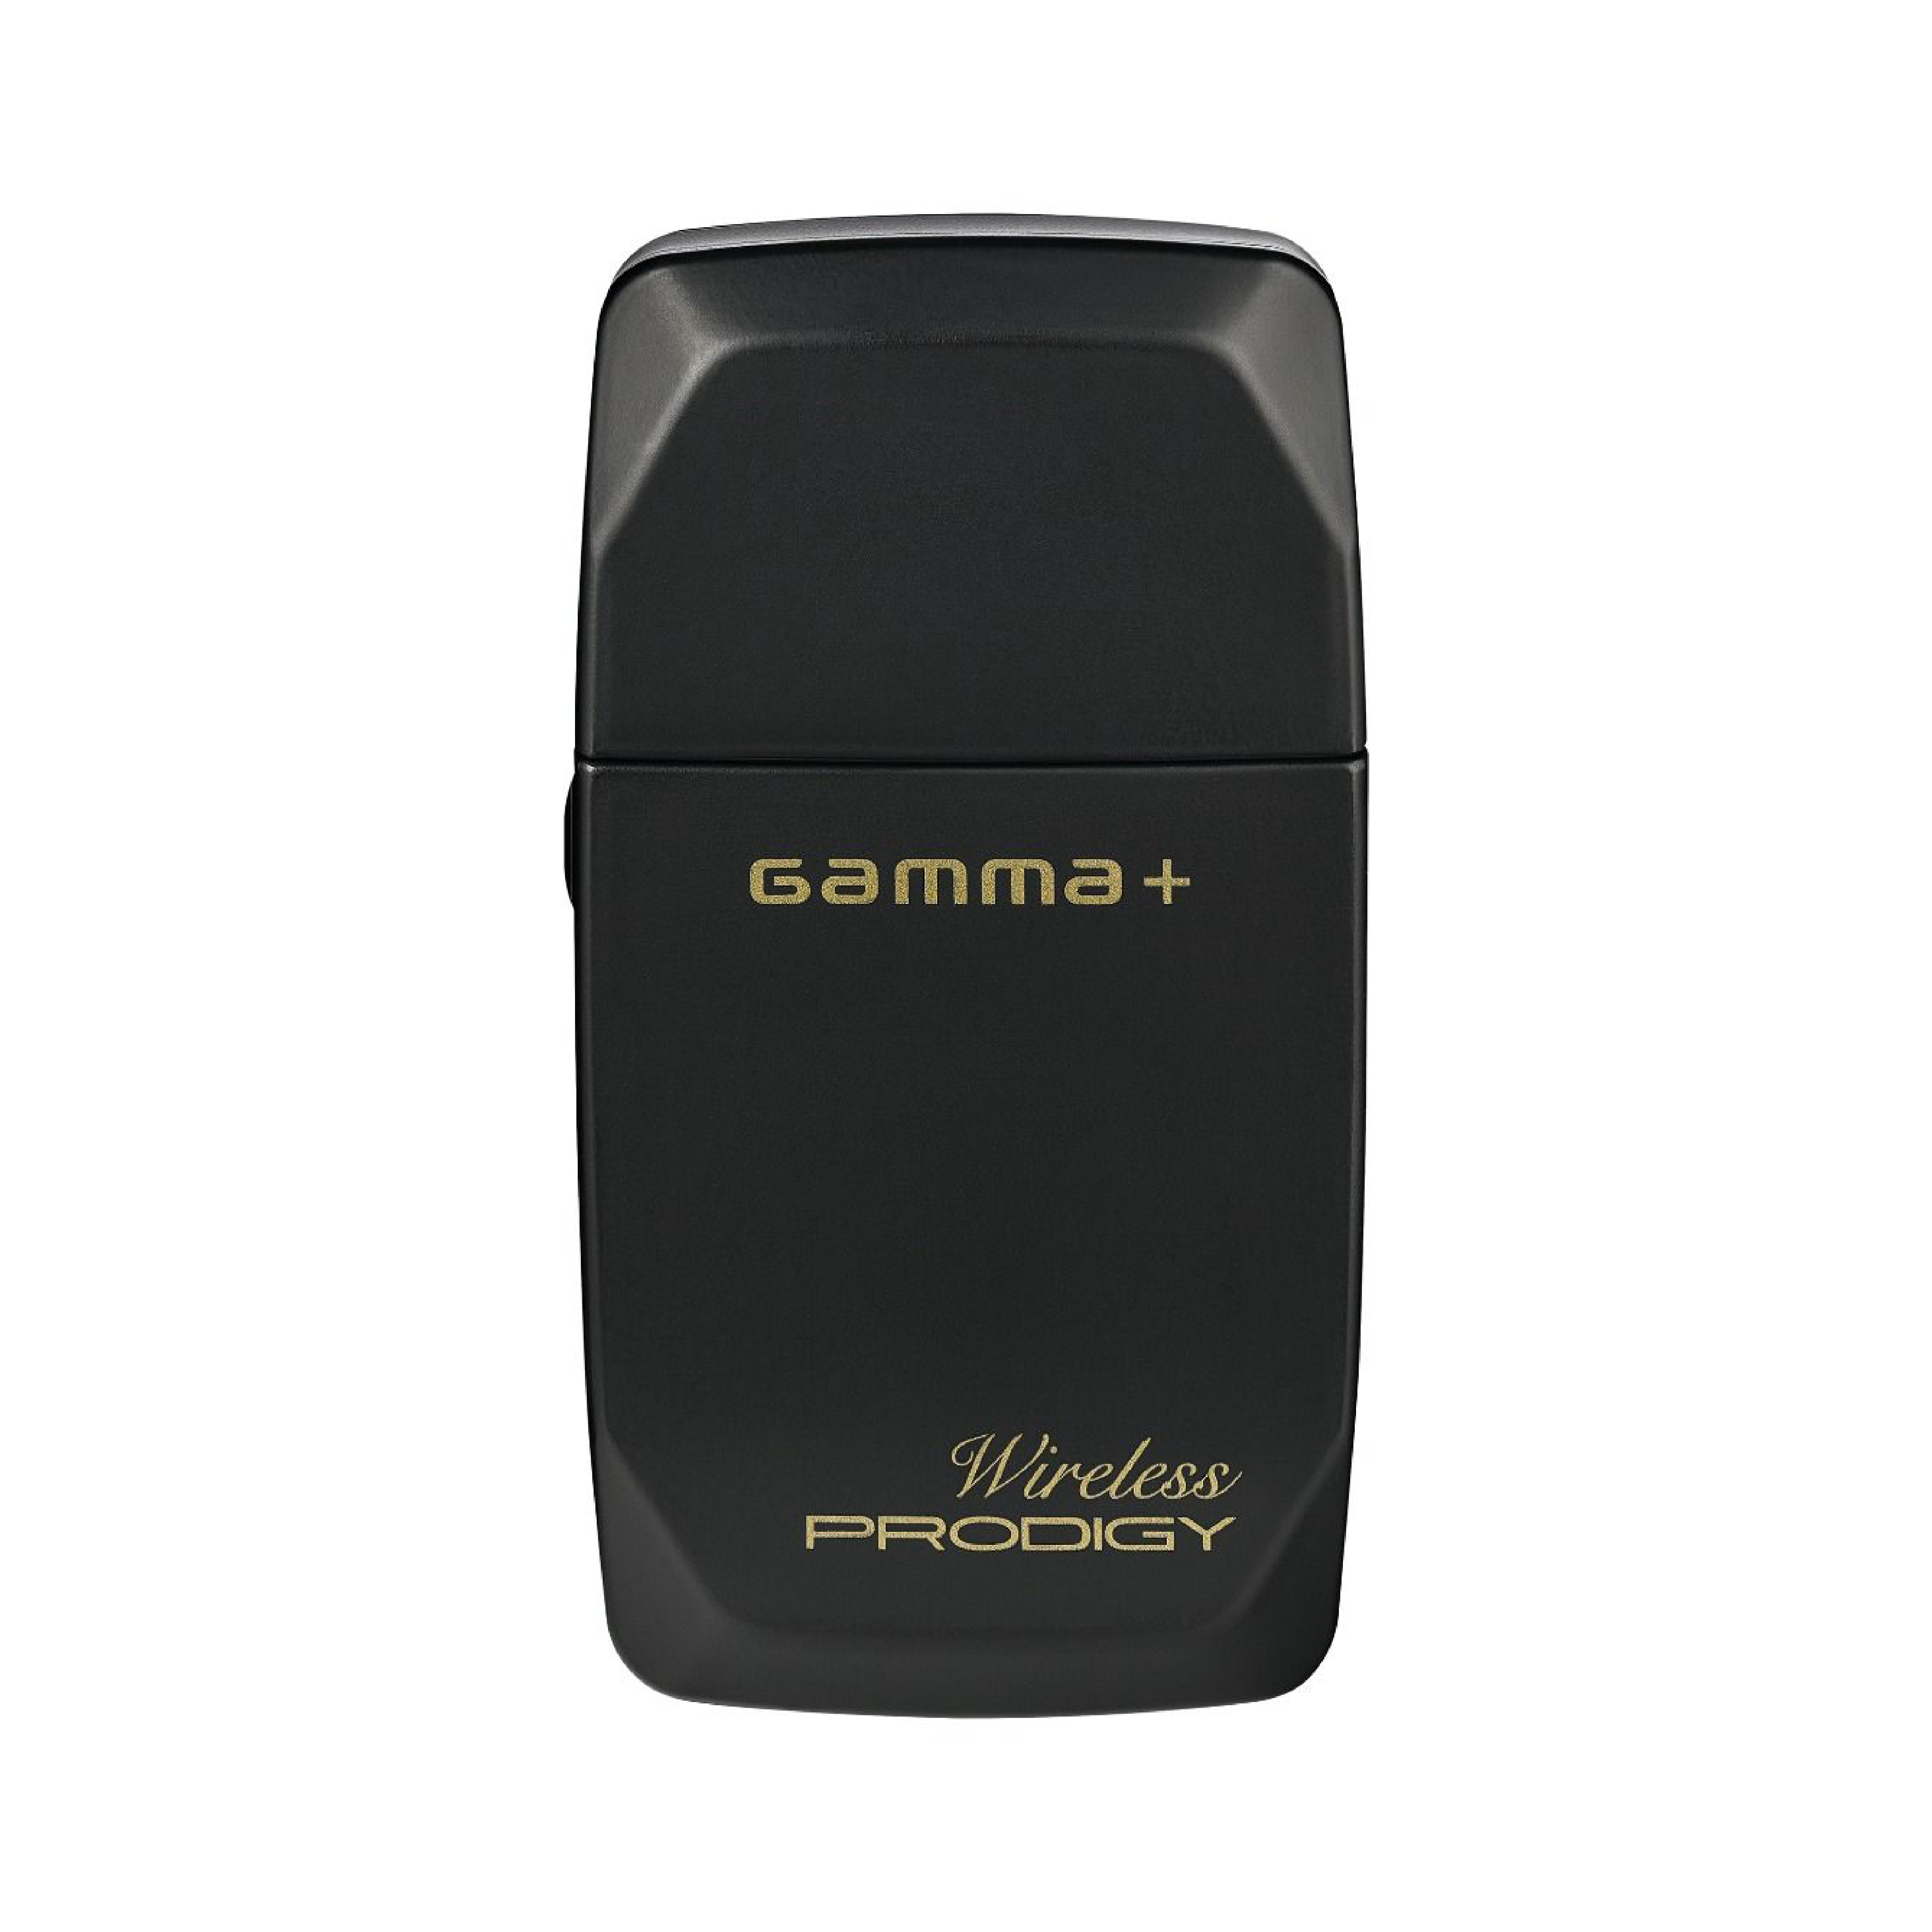 Gamma Plus Wireless Prodigy Foil Shaver